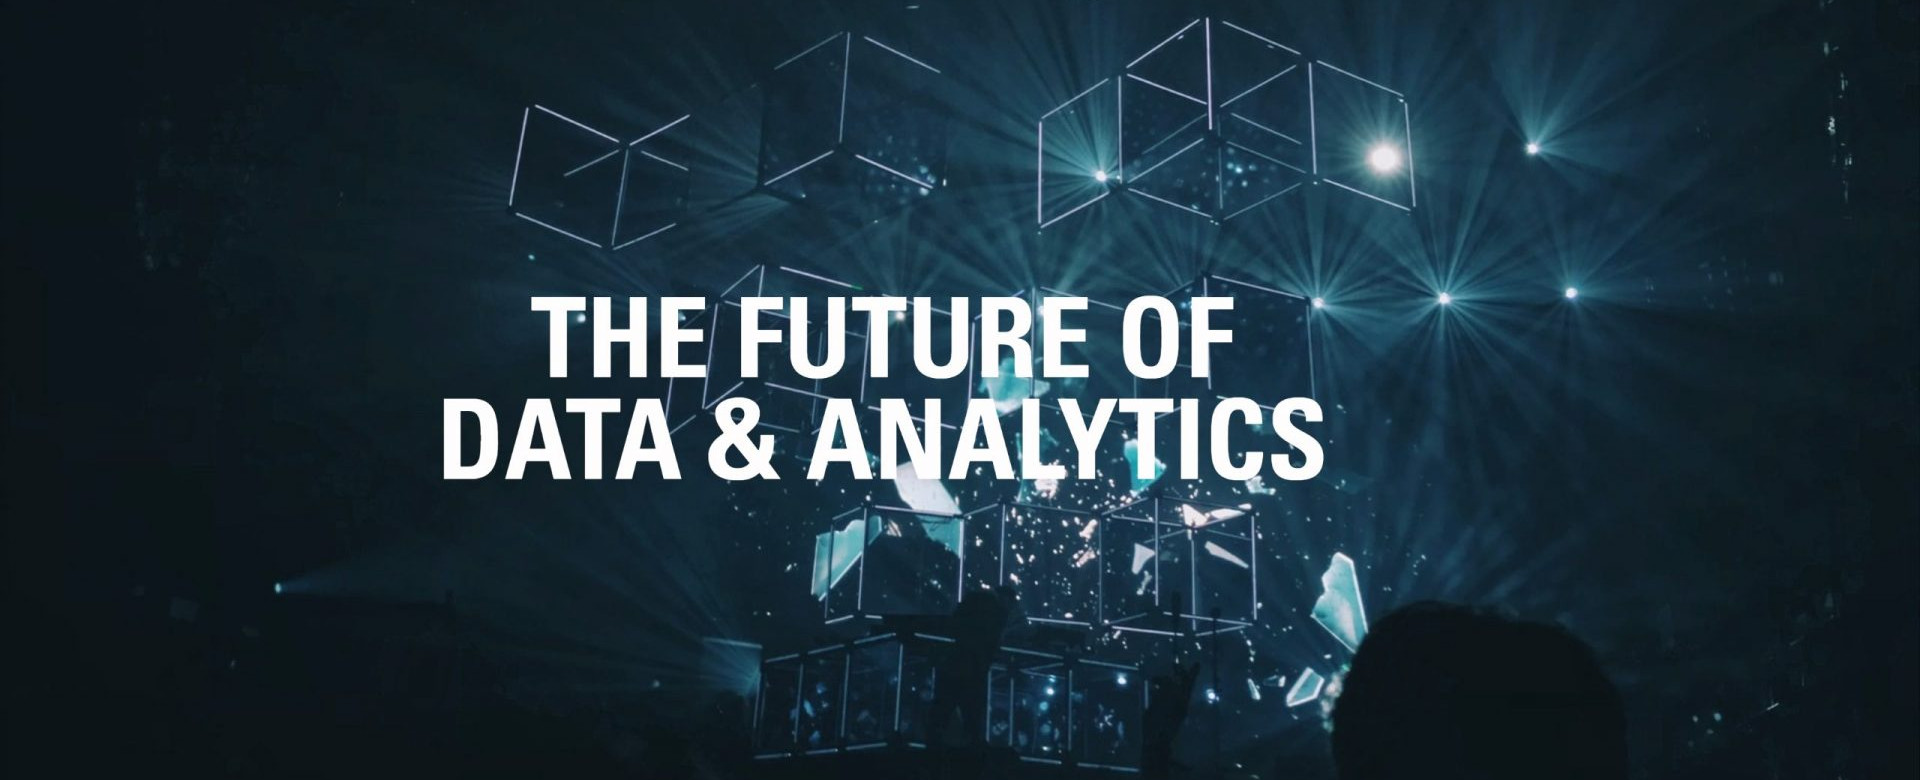 Future of Data & Analytics 2021